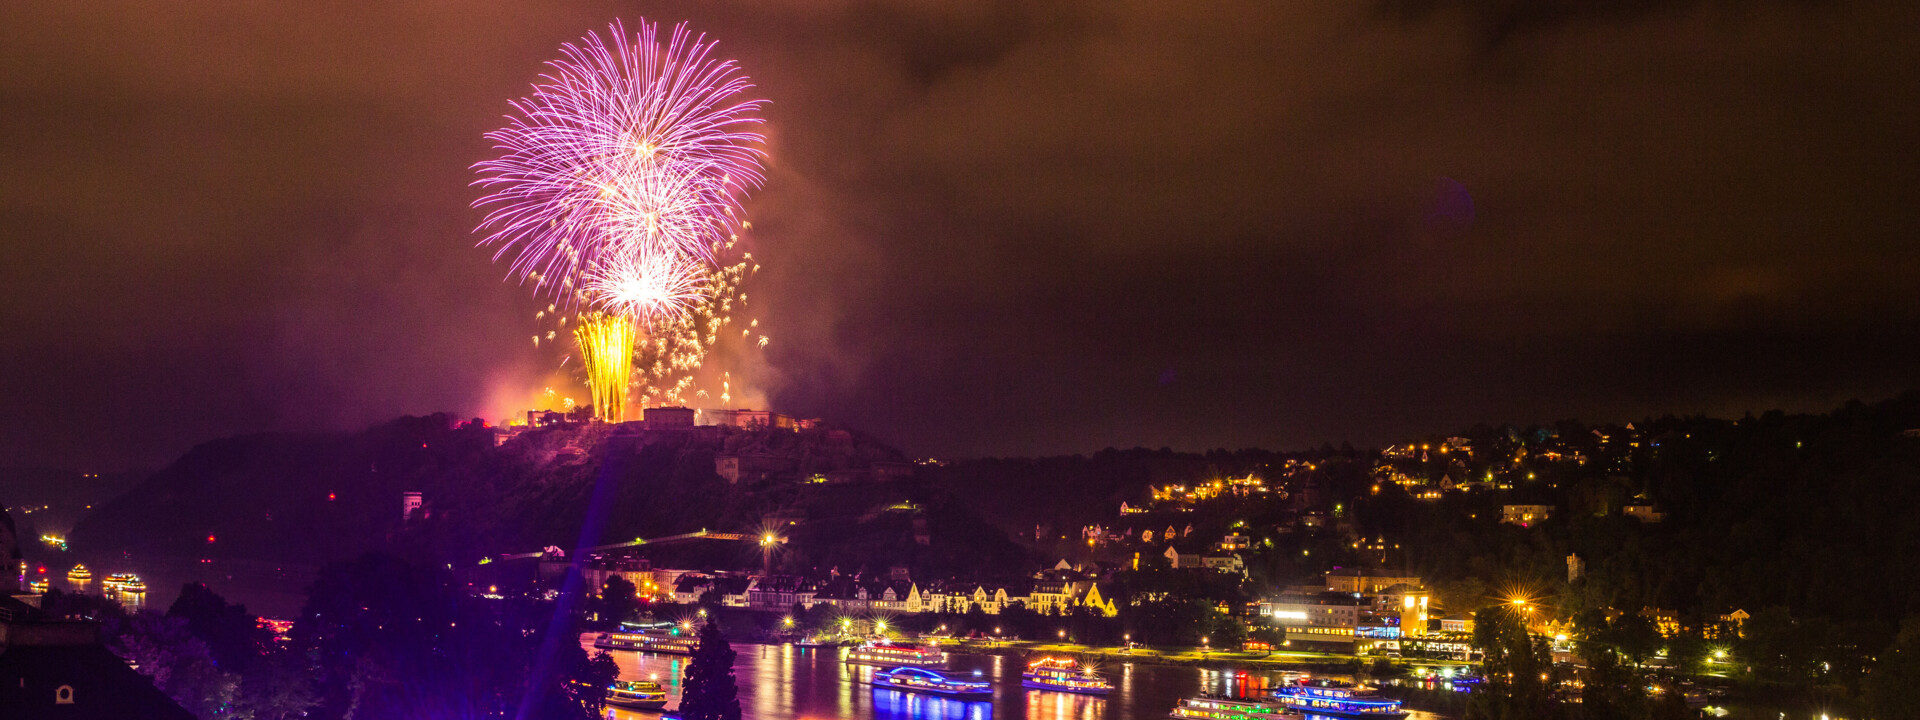 Feuerwerke über der Festung Ehrenbreitstein beleuchten den Nachthimmel. Farblich beleuchtete Schiffe fahren auf dem Rhein. ©Koblenz-Touristik GmbH, Henry Tornow